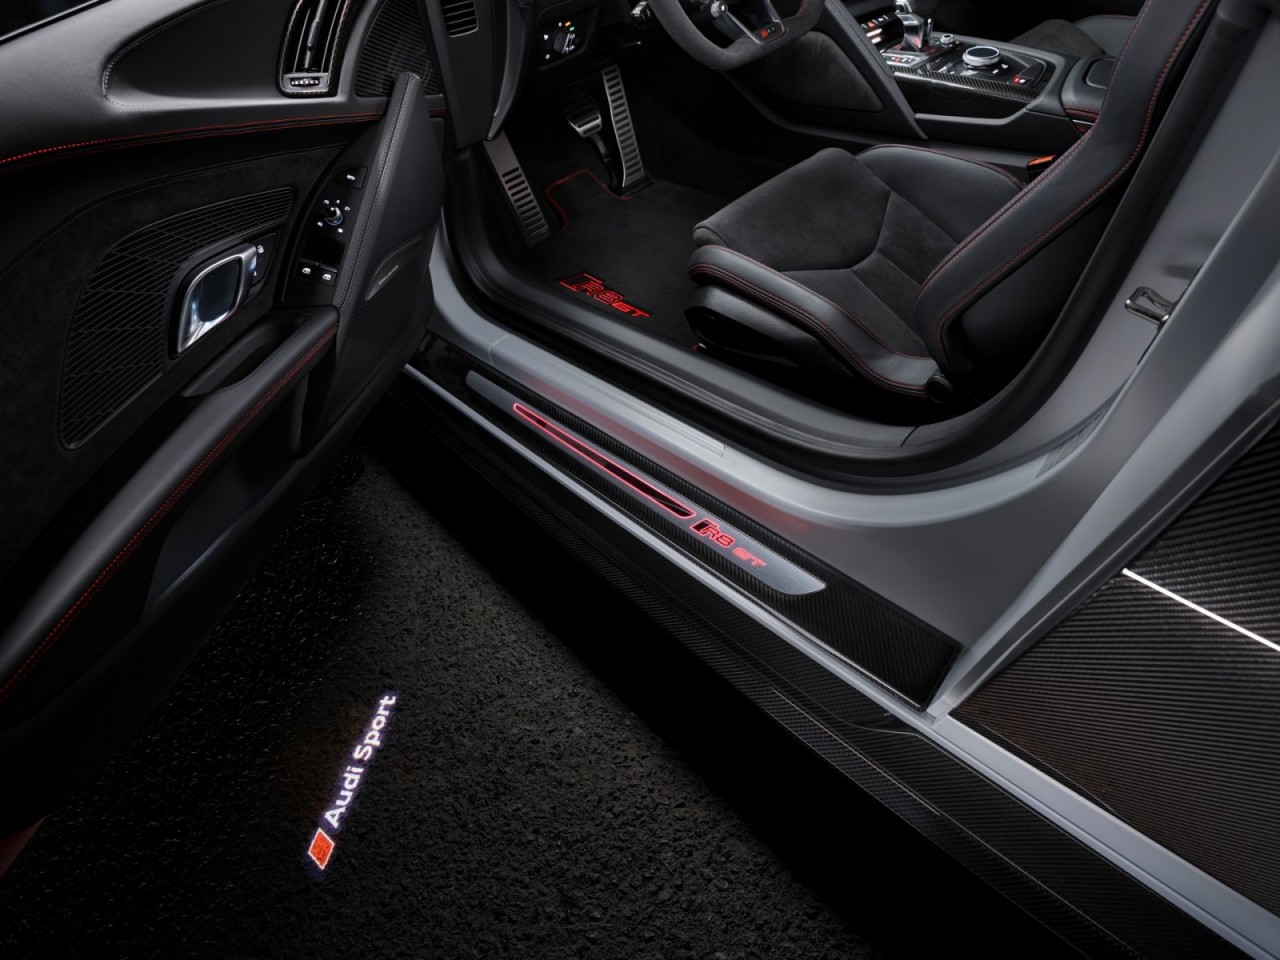 Audi giới thiệu R8 GT phiên bản giới hạn với số lượng 333 xe